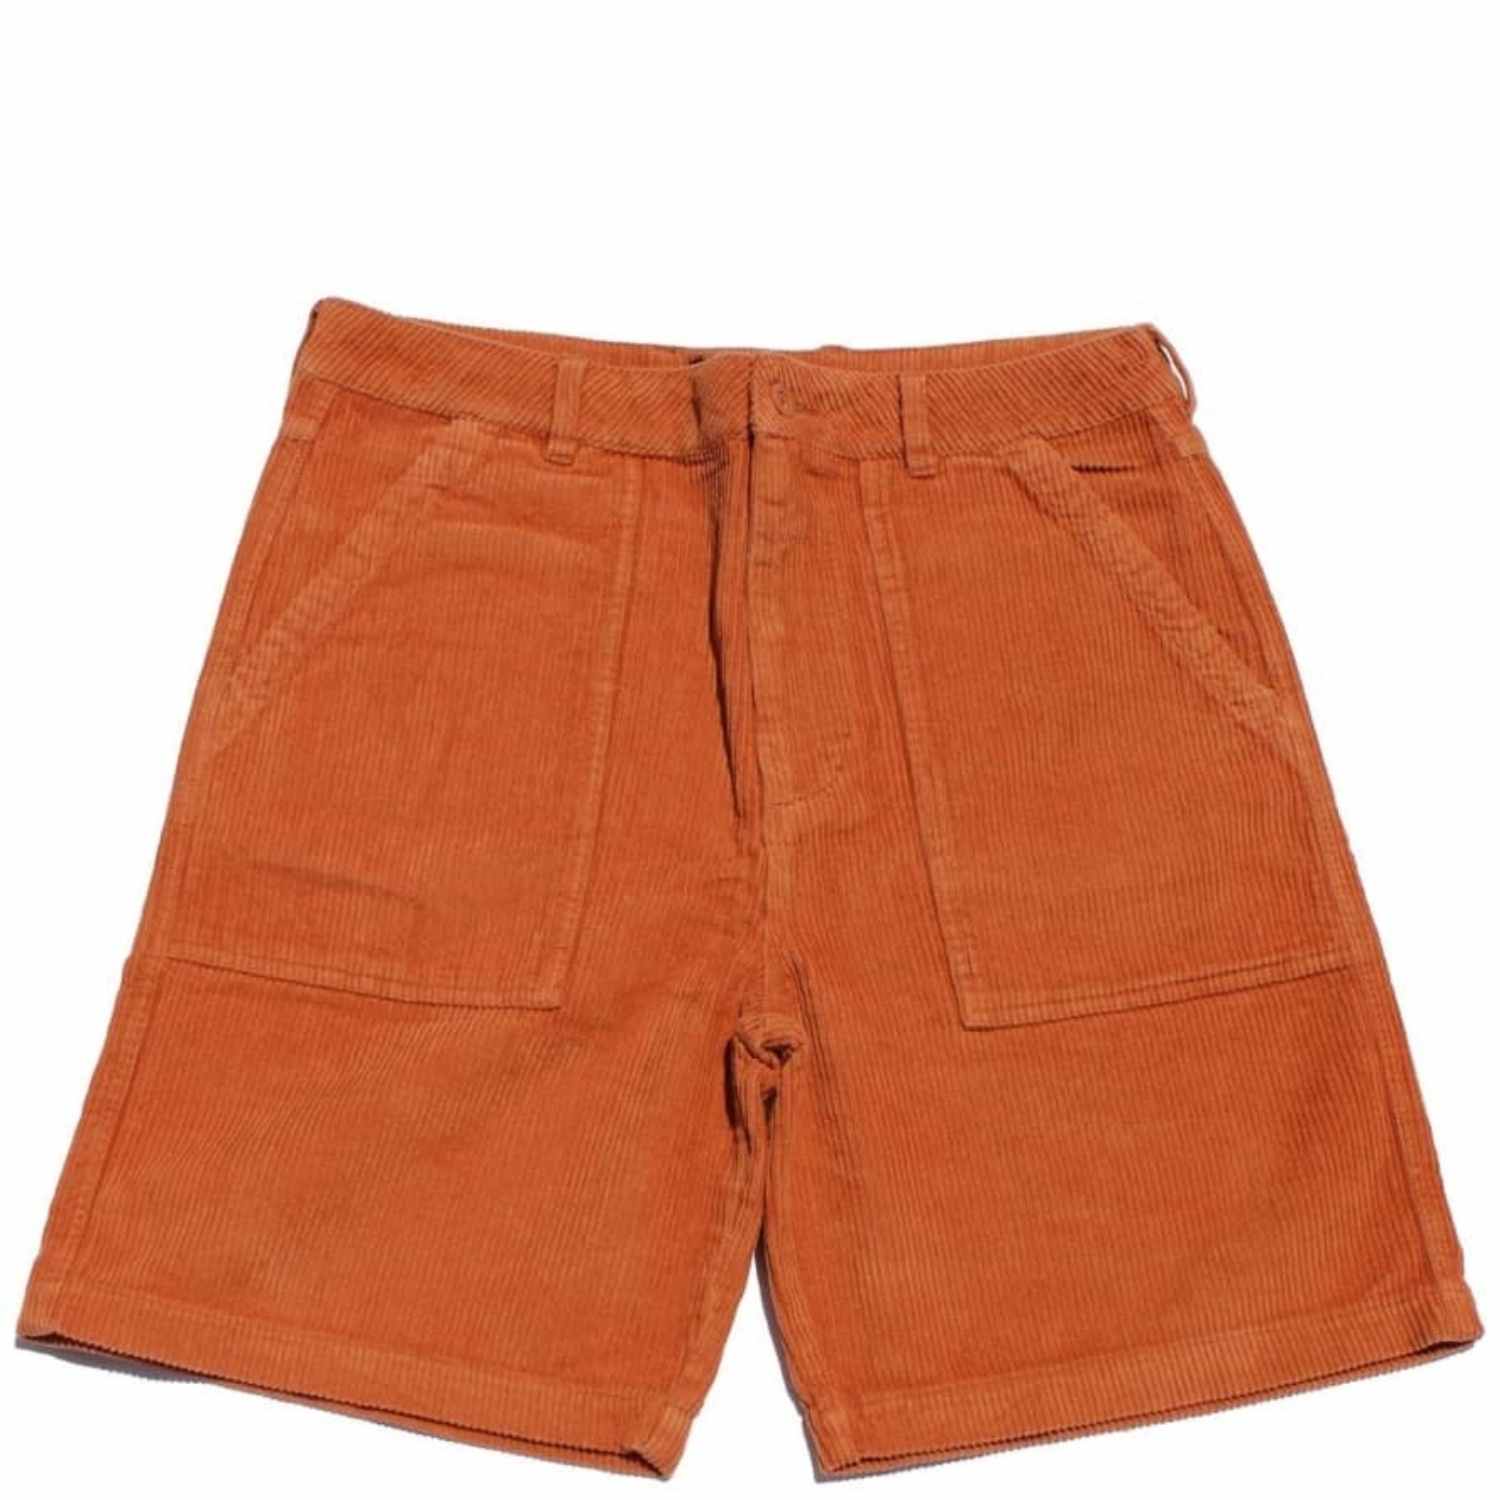 Quasi - Murmur Shorts - Peach